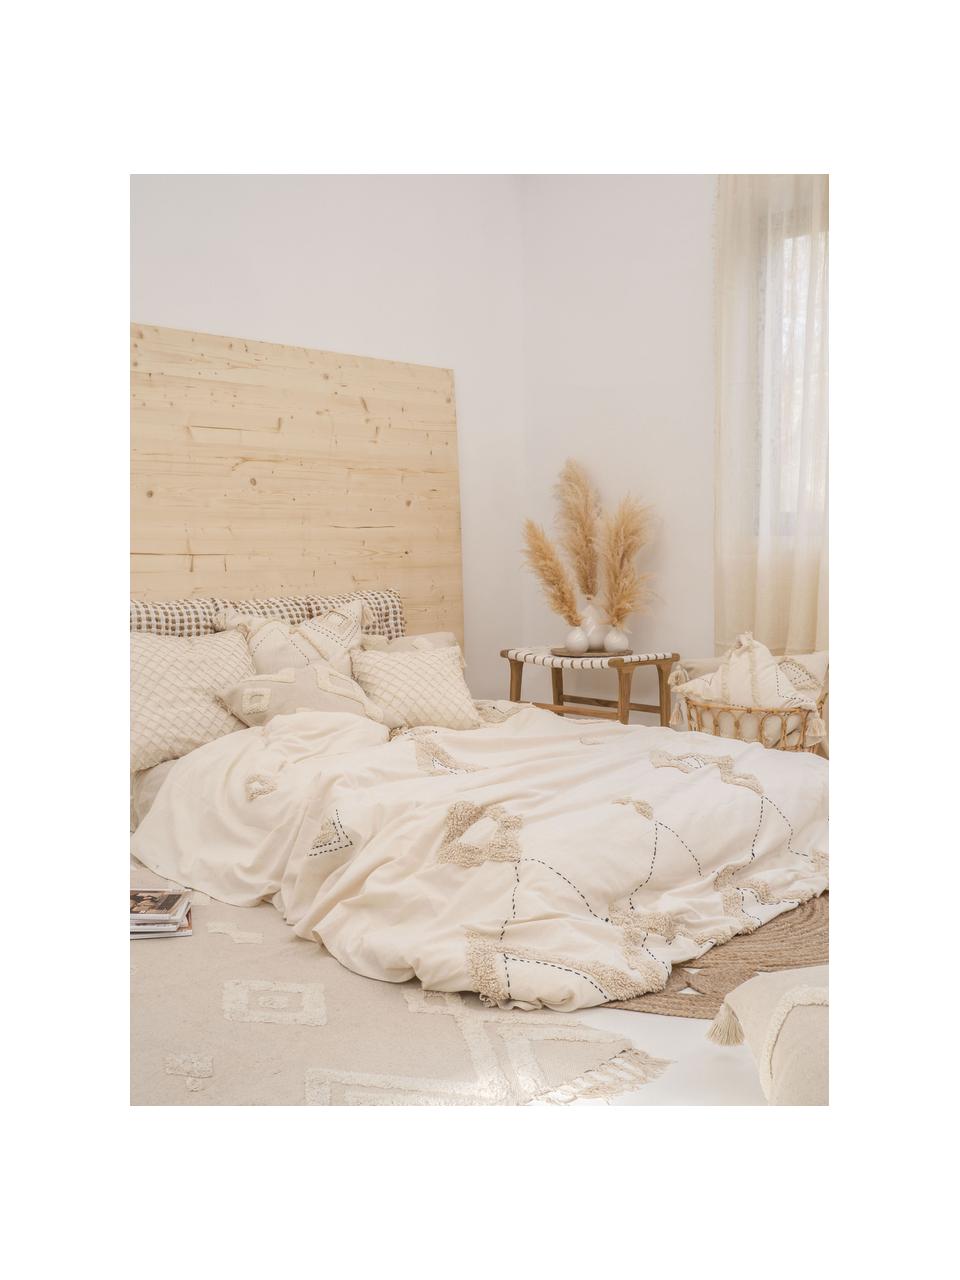 Copriletto in cotone con modello a rilievo Lienzo, Cotone, Bianco crema, marrone, Larg. 270 x Lung. 280 cm